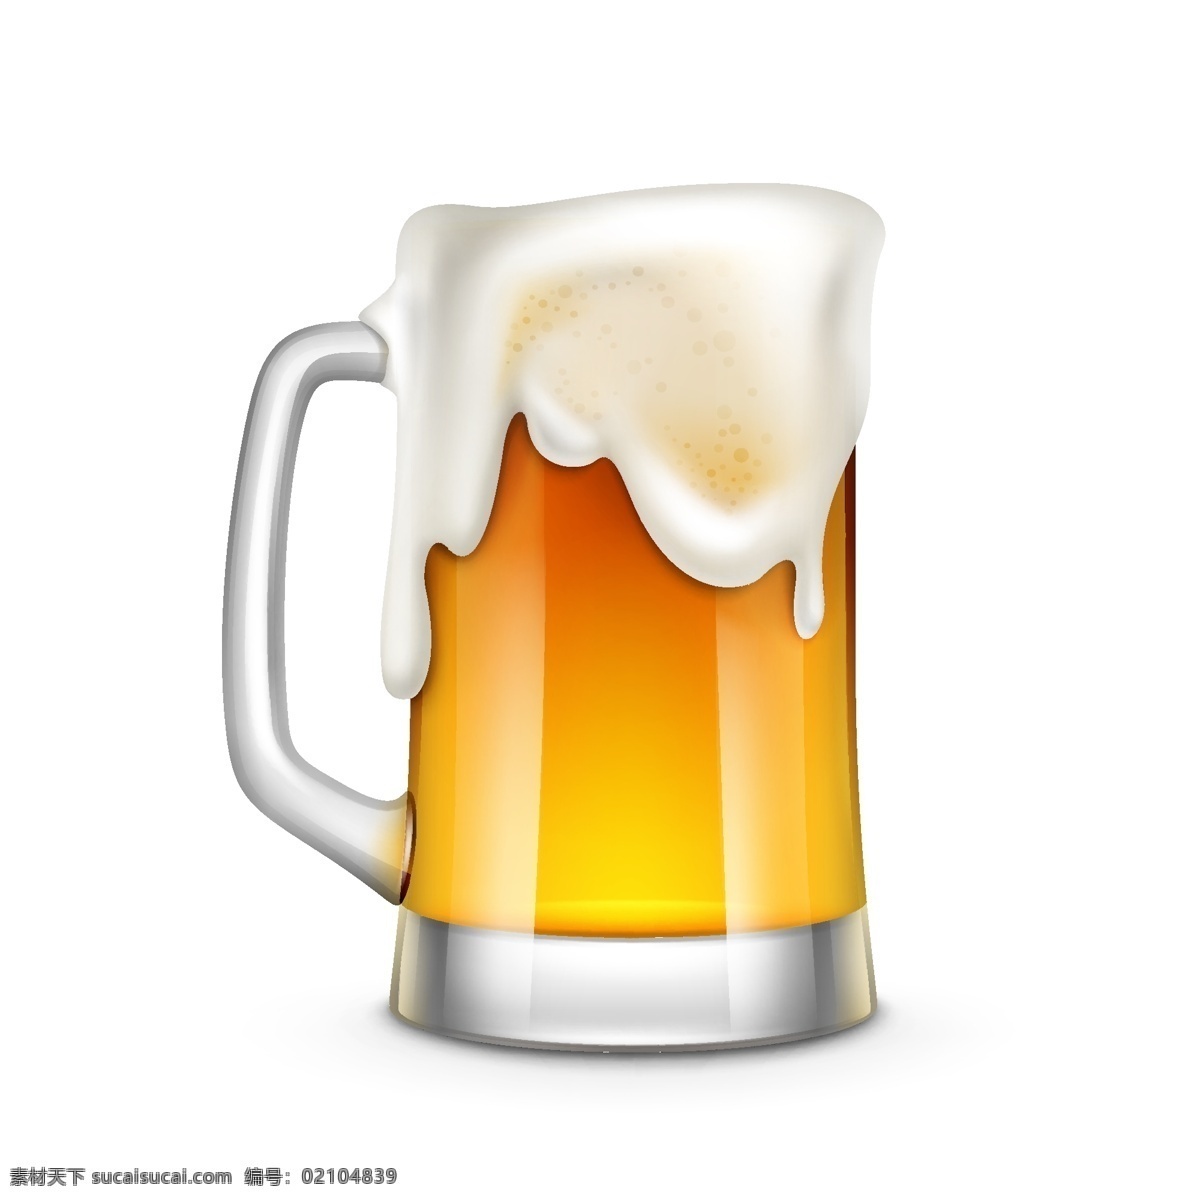 啤酒 杯子 卡通 矢量 玻璃 矢量素材 设计素材 背景素材